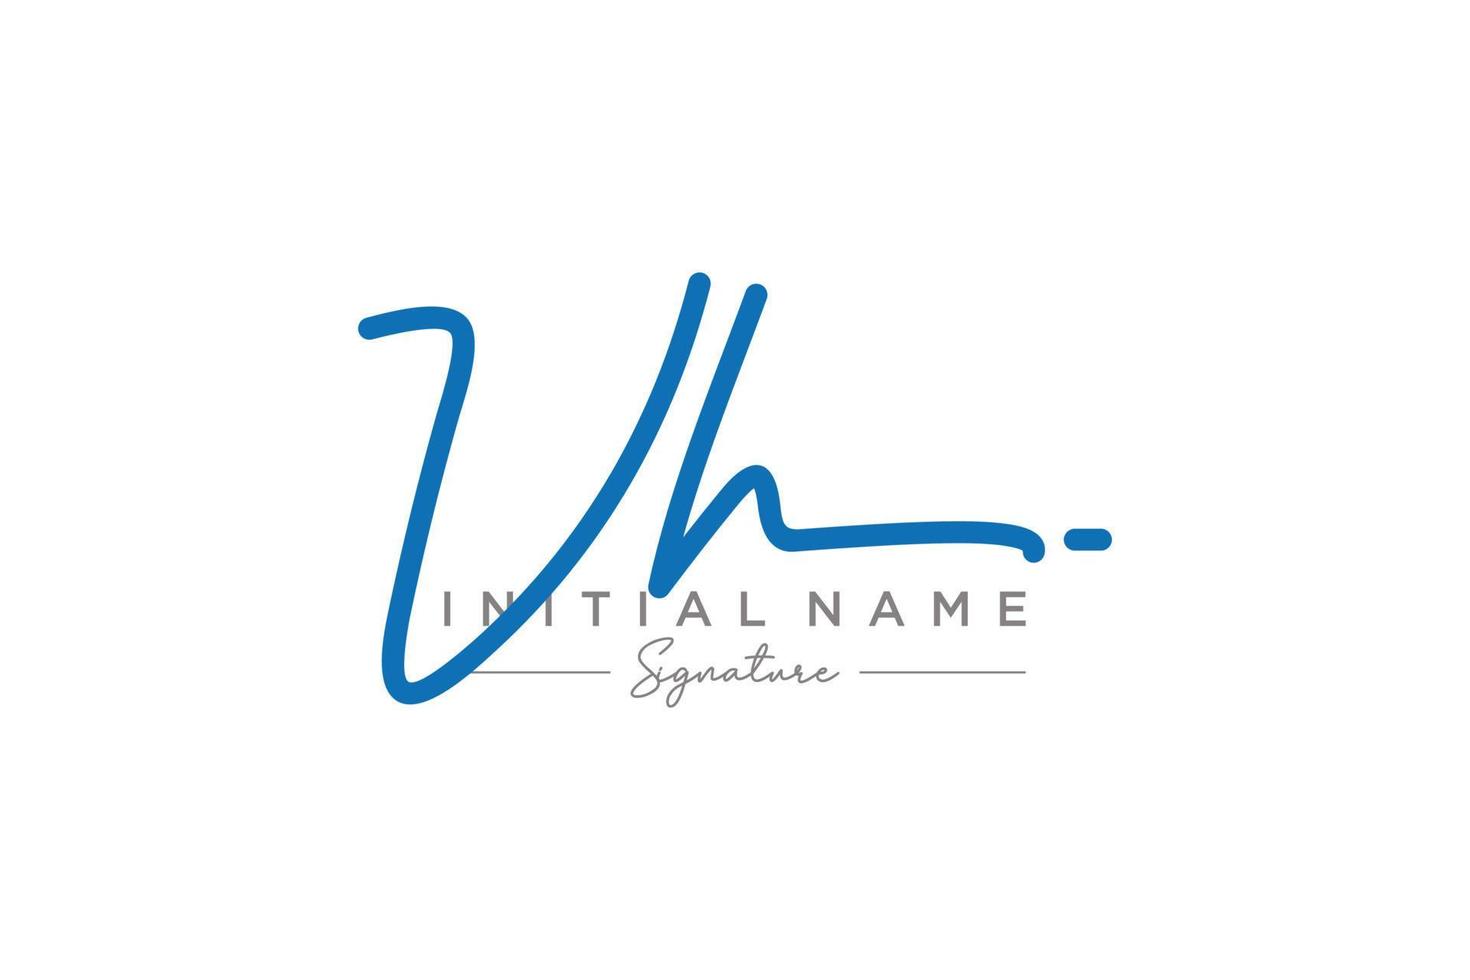 vetor inicial de modelo de logotipo de assinatura vh. ilustração vetorial de letras de caligrafia desenhada à mão.